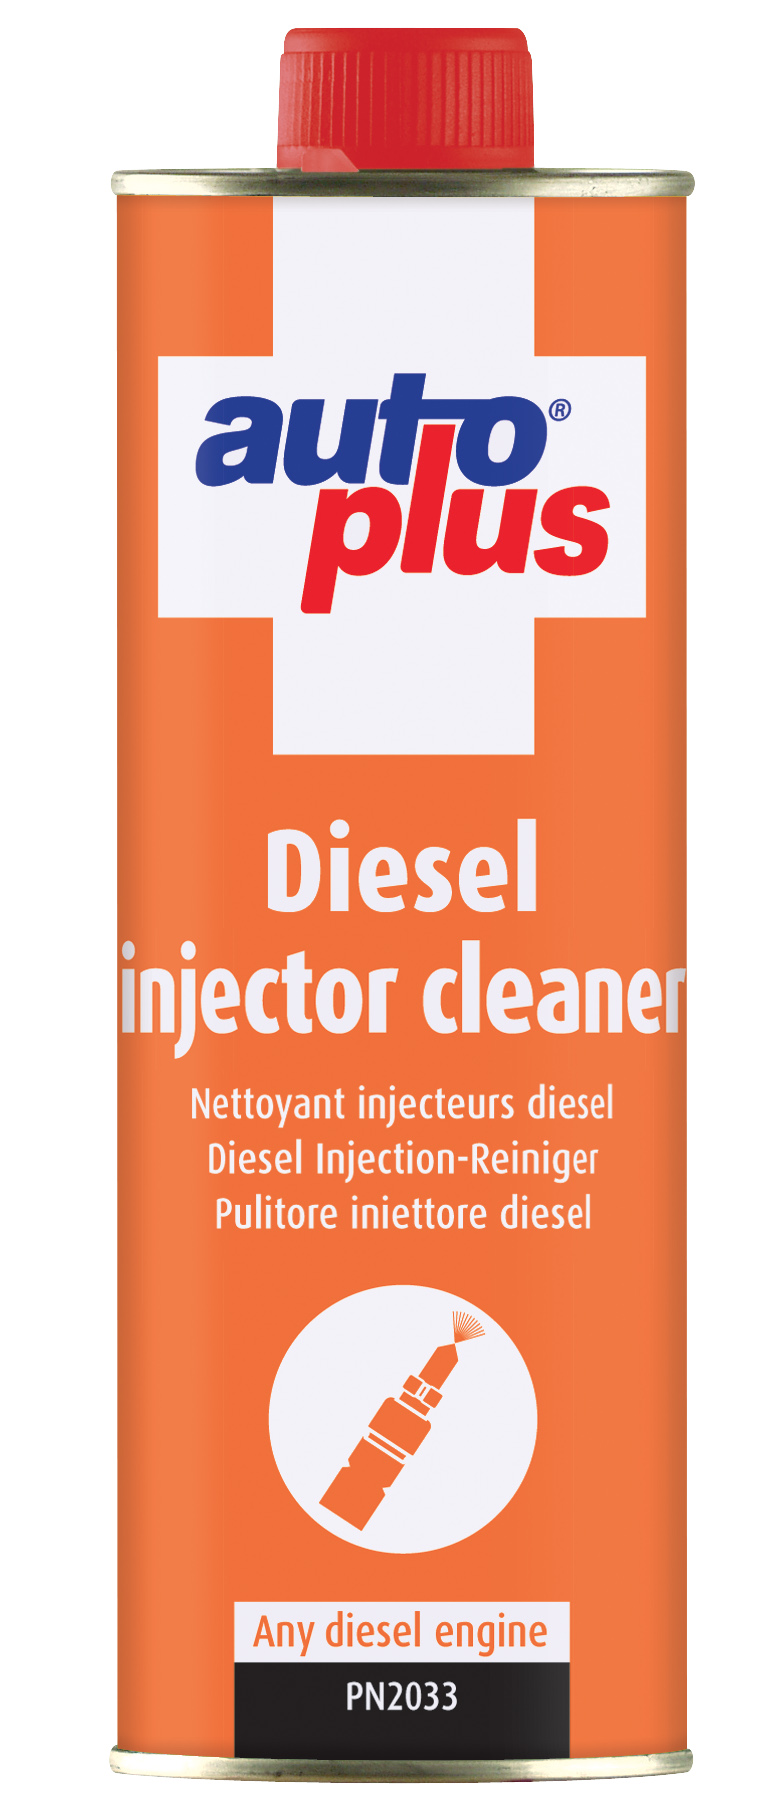 Additifs, Diesel Injector Cleaner